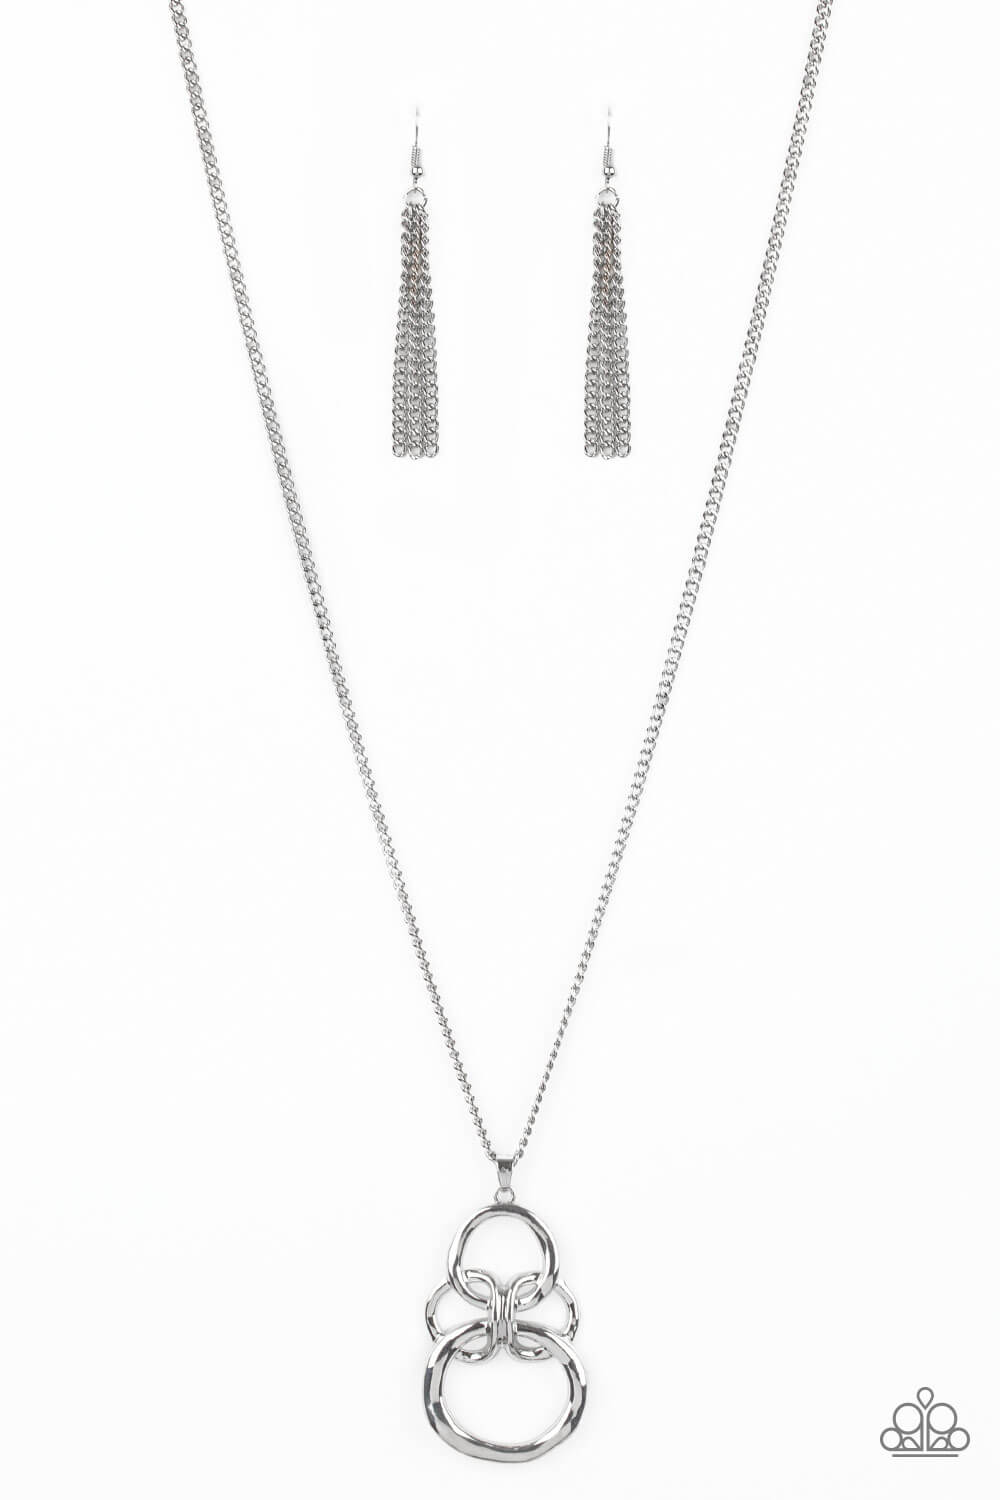 Courageous Contour - Silver Necklace Set - Princess Glam Shop